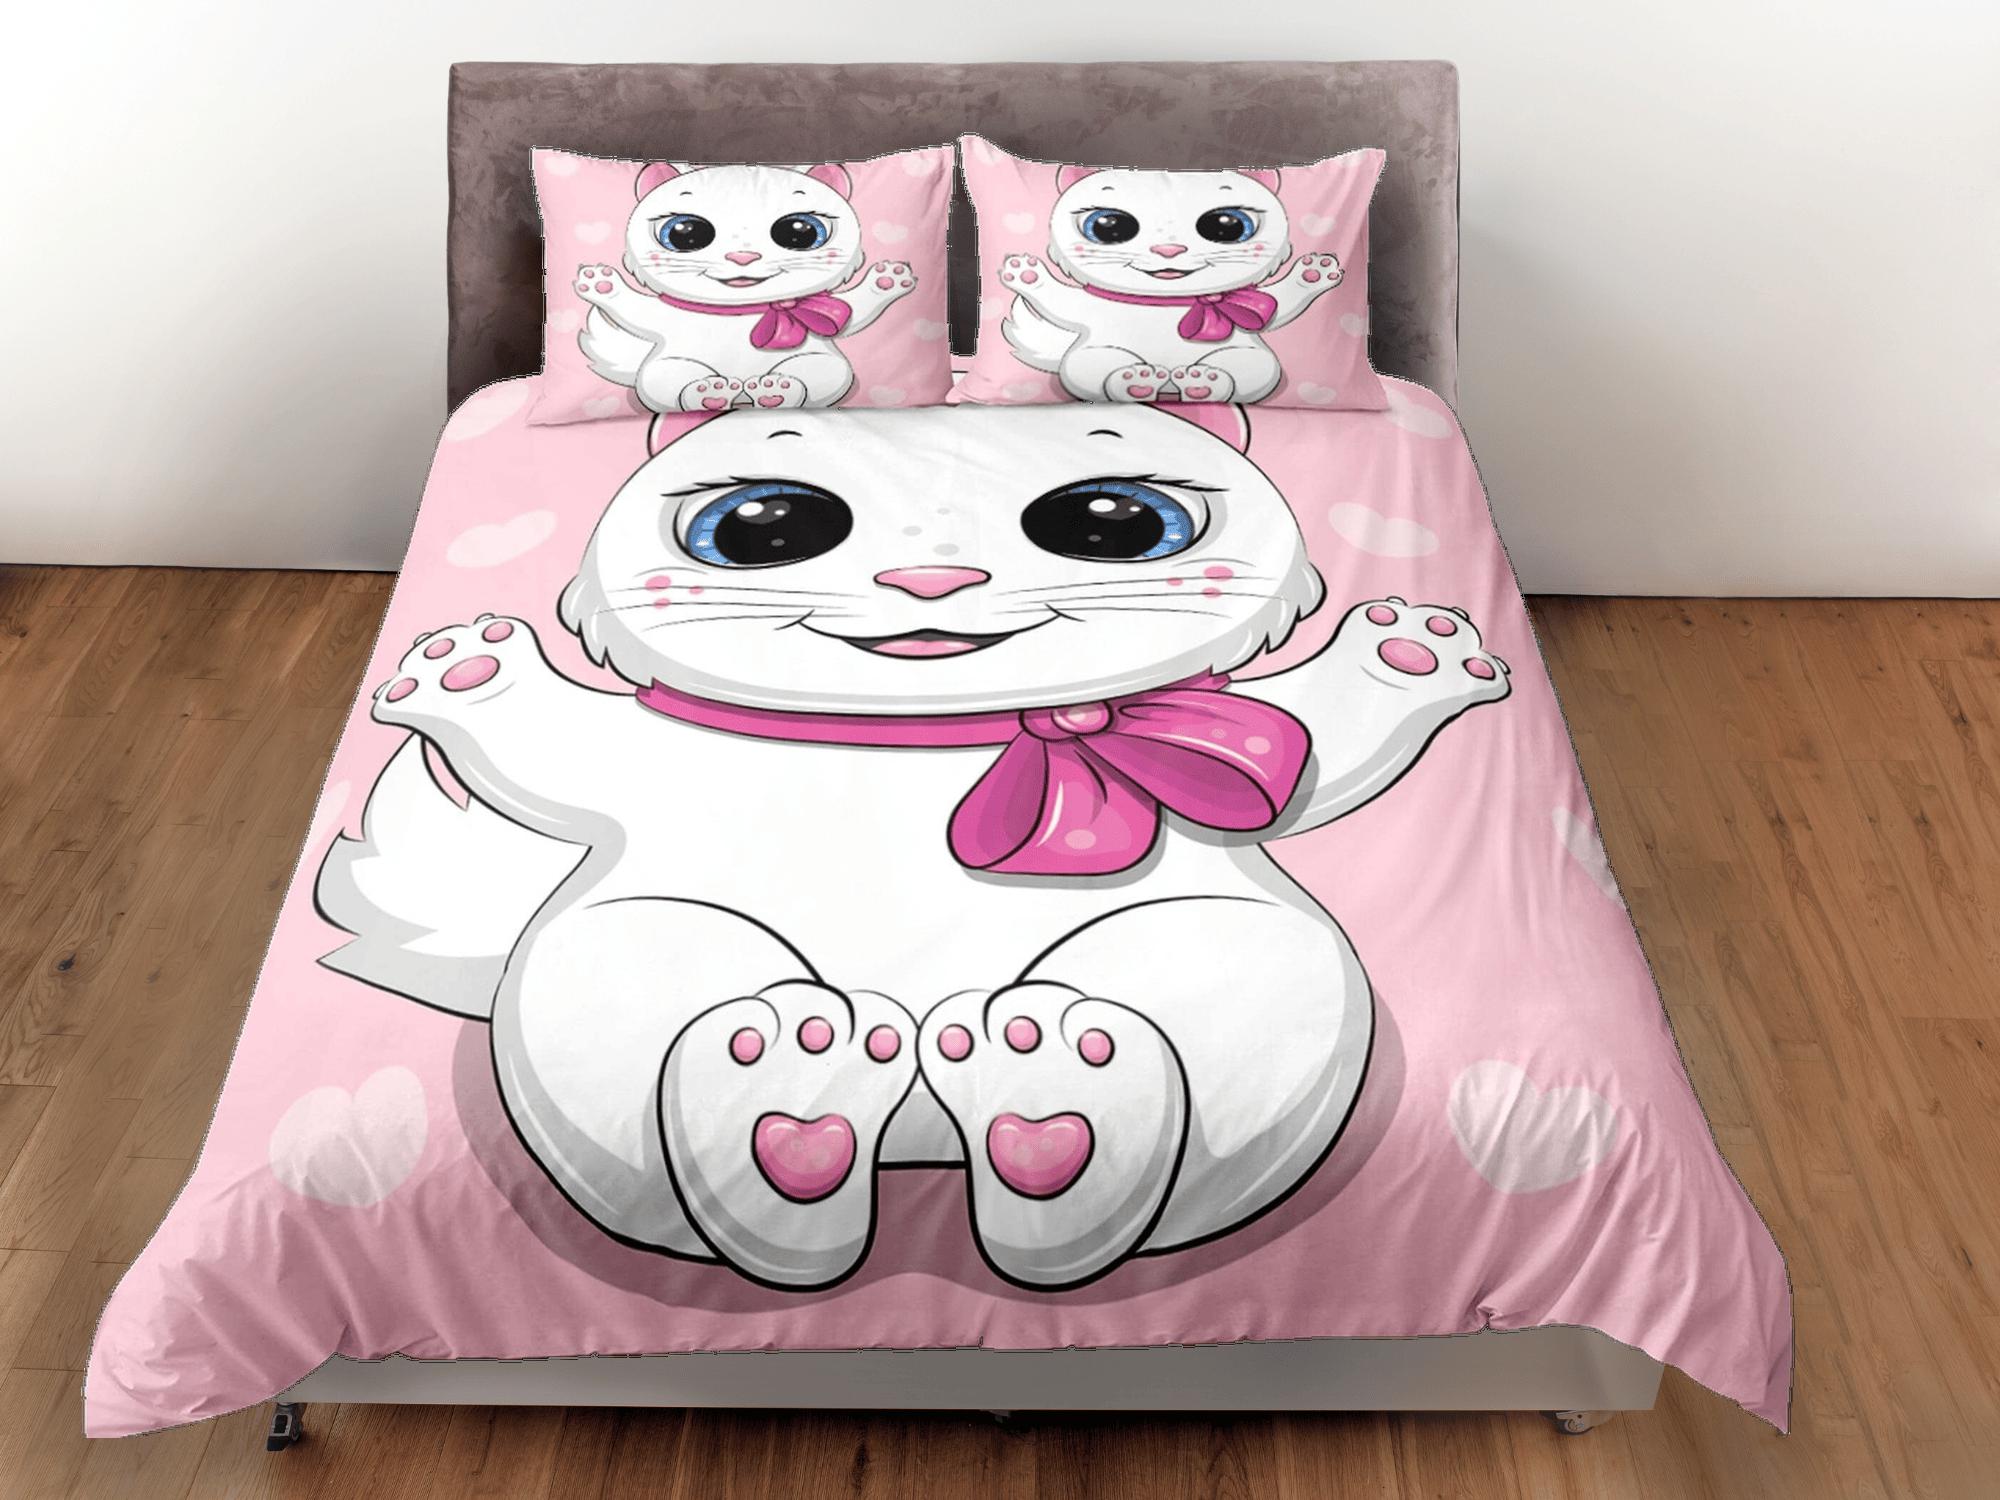 daintyduvet Cute white cat bedding pink, toddler bedding, kids duvet cover set, gift for cat lovers, baby bedding, baby shower gift, girly bedding